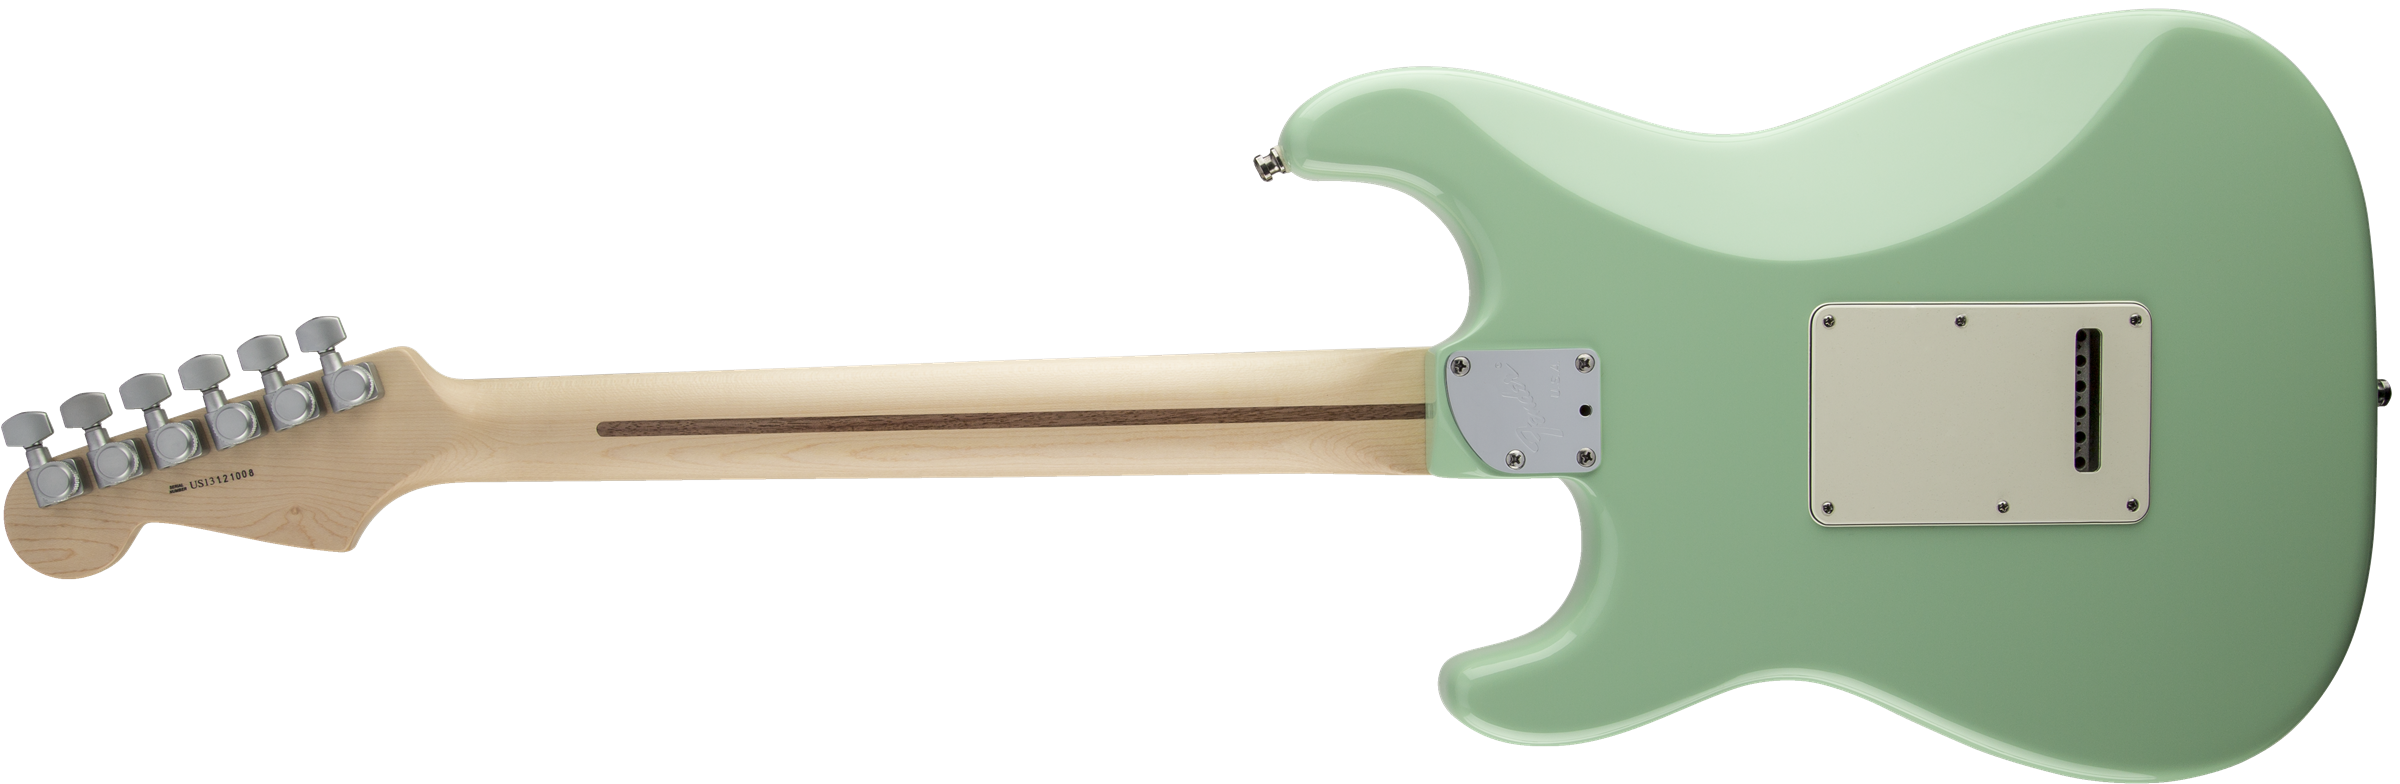 Fender Stratocaster Jeff Beck - Surf Green - Str shape electric guitar - Variation 1